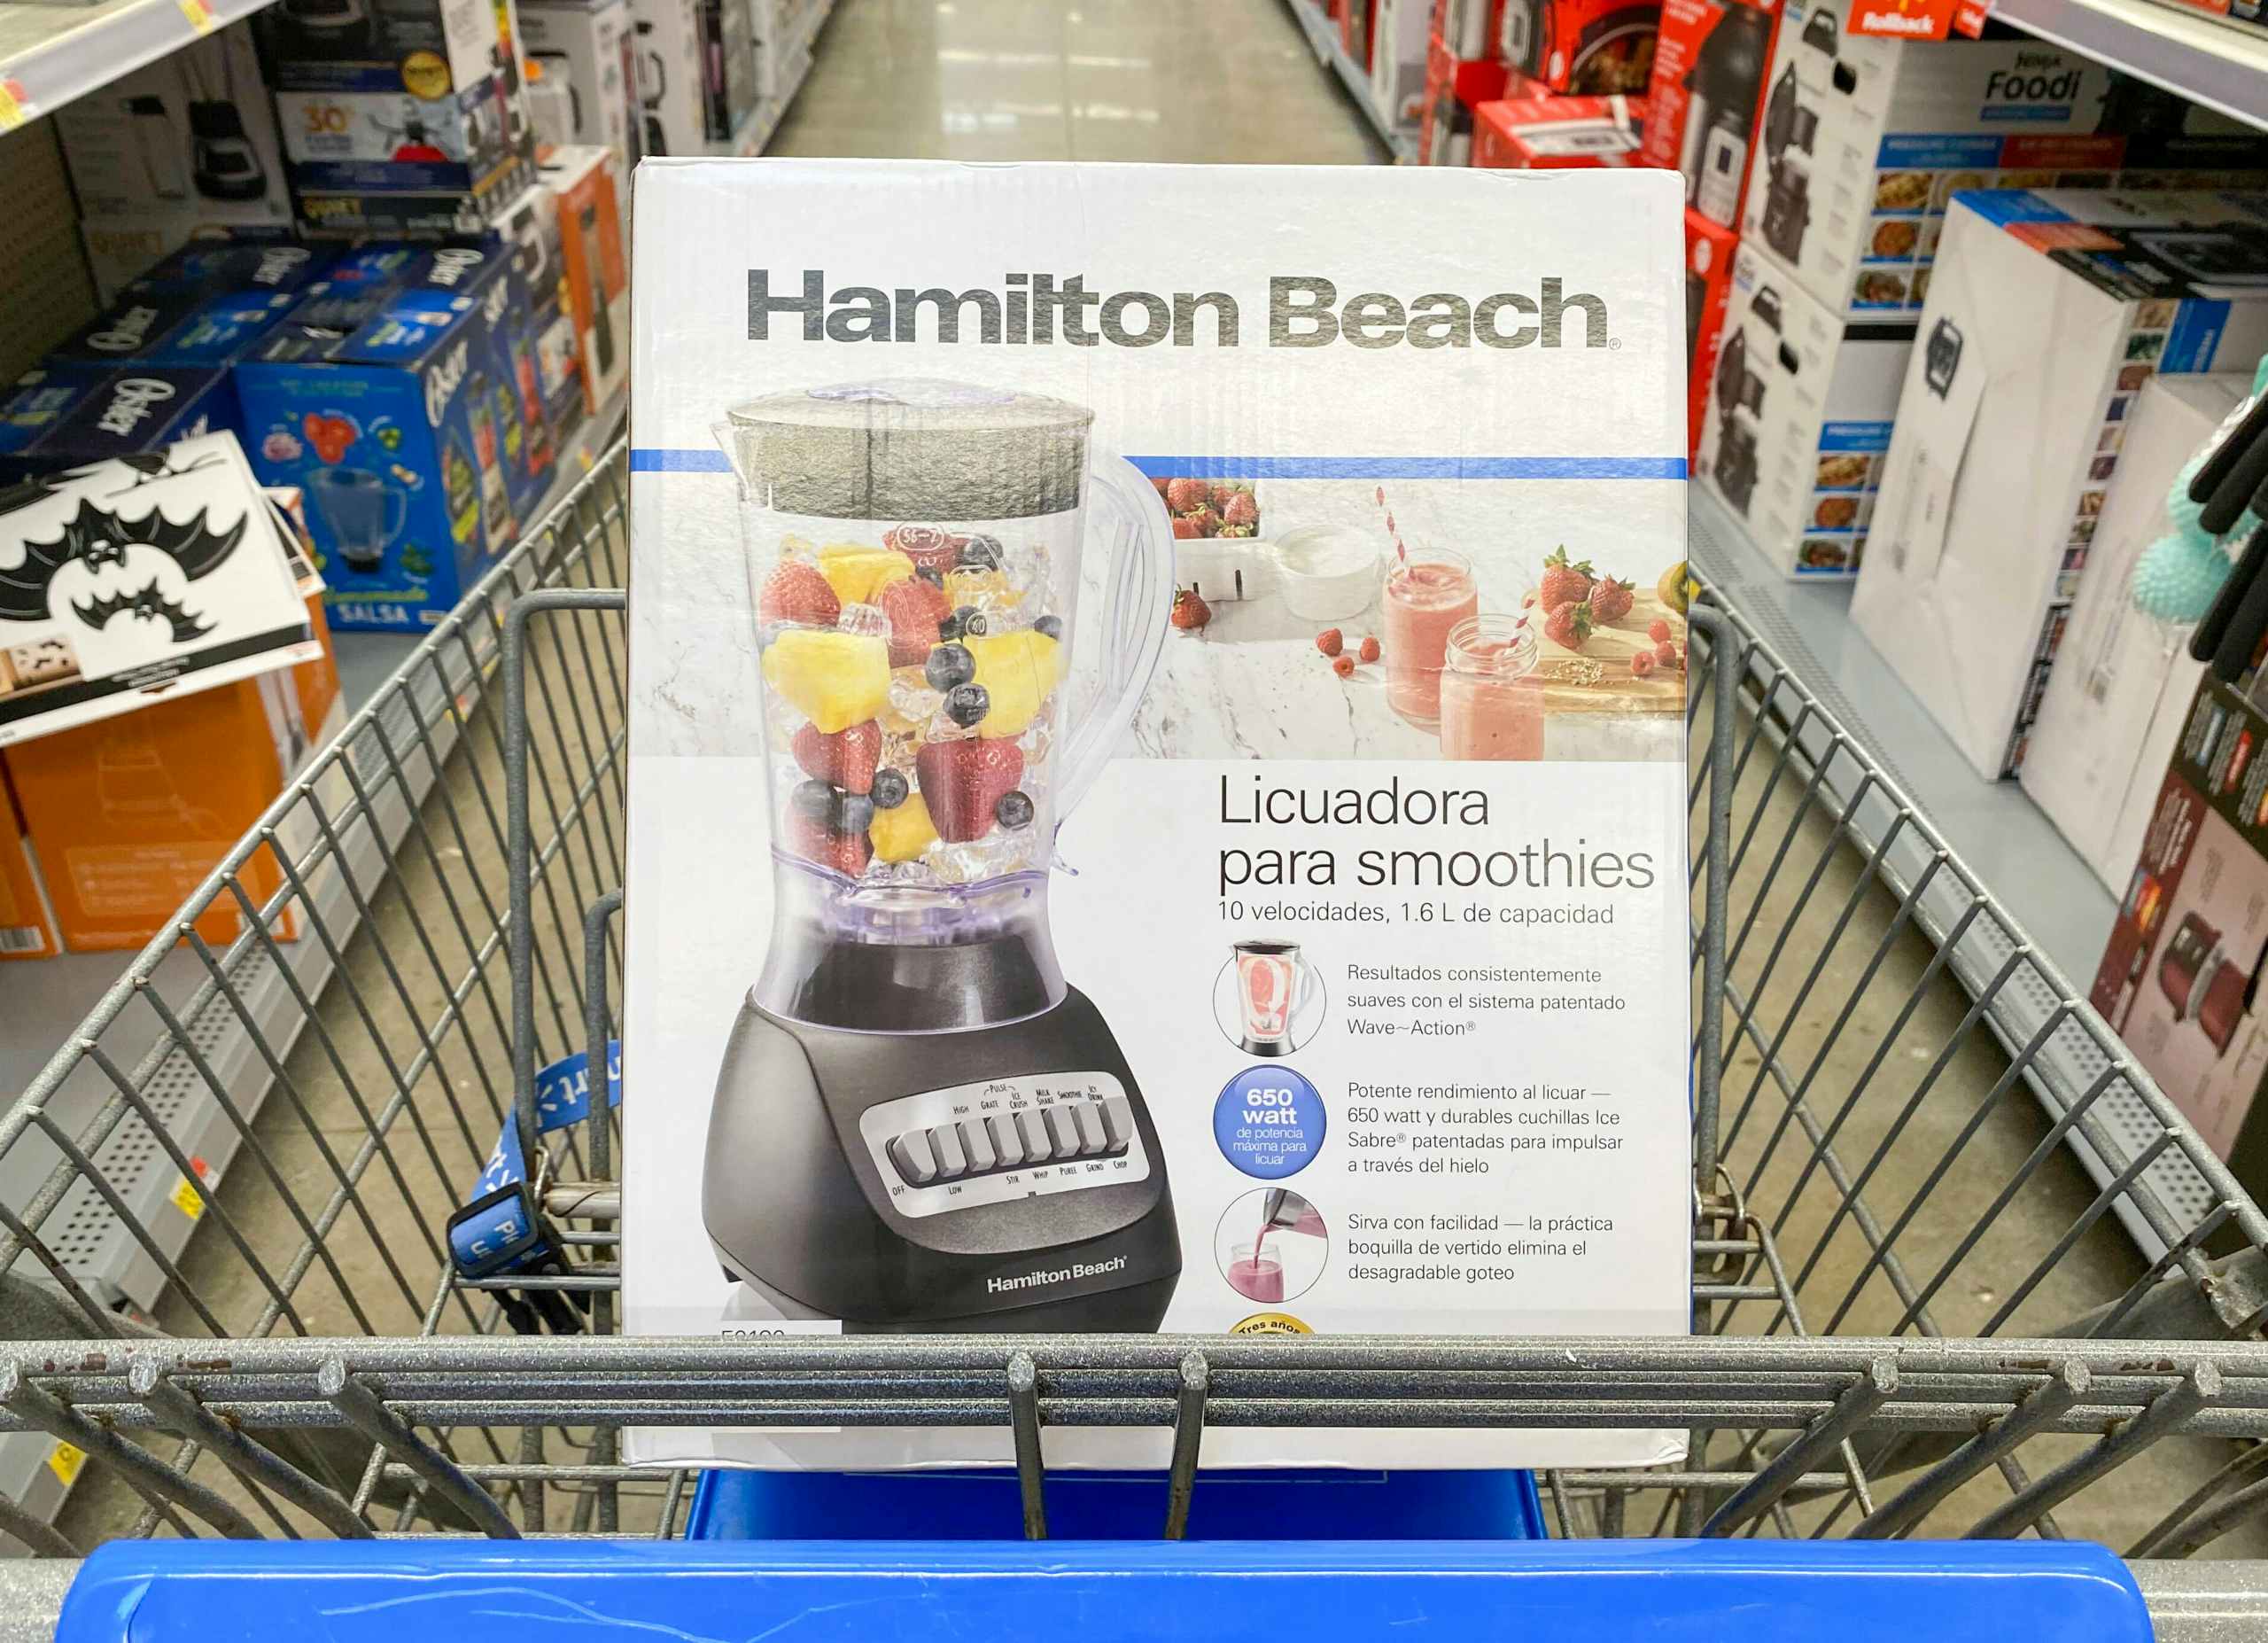 Hamilton Beach blender in a shopping cart at Walmart